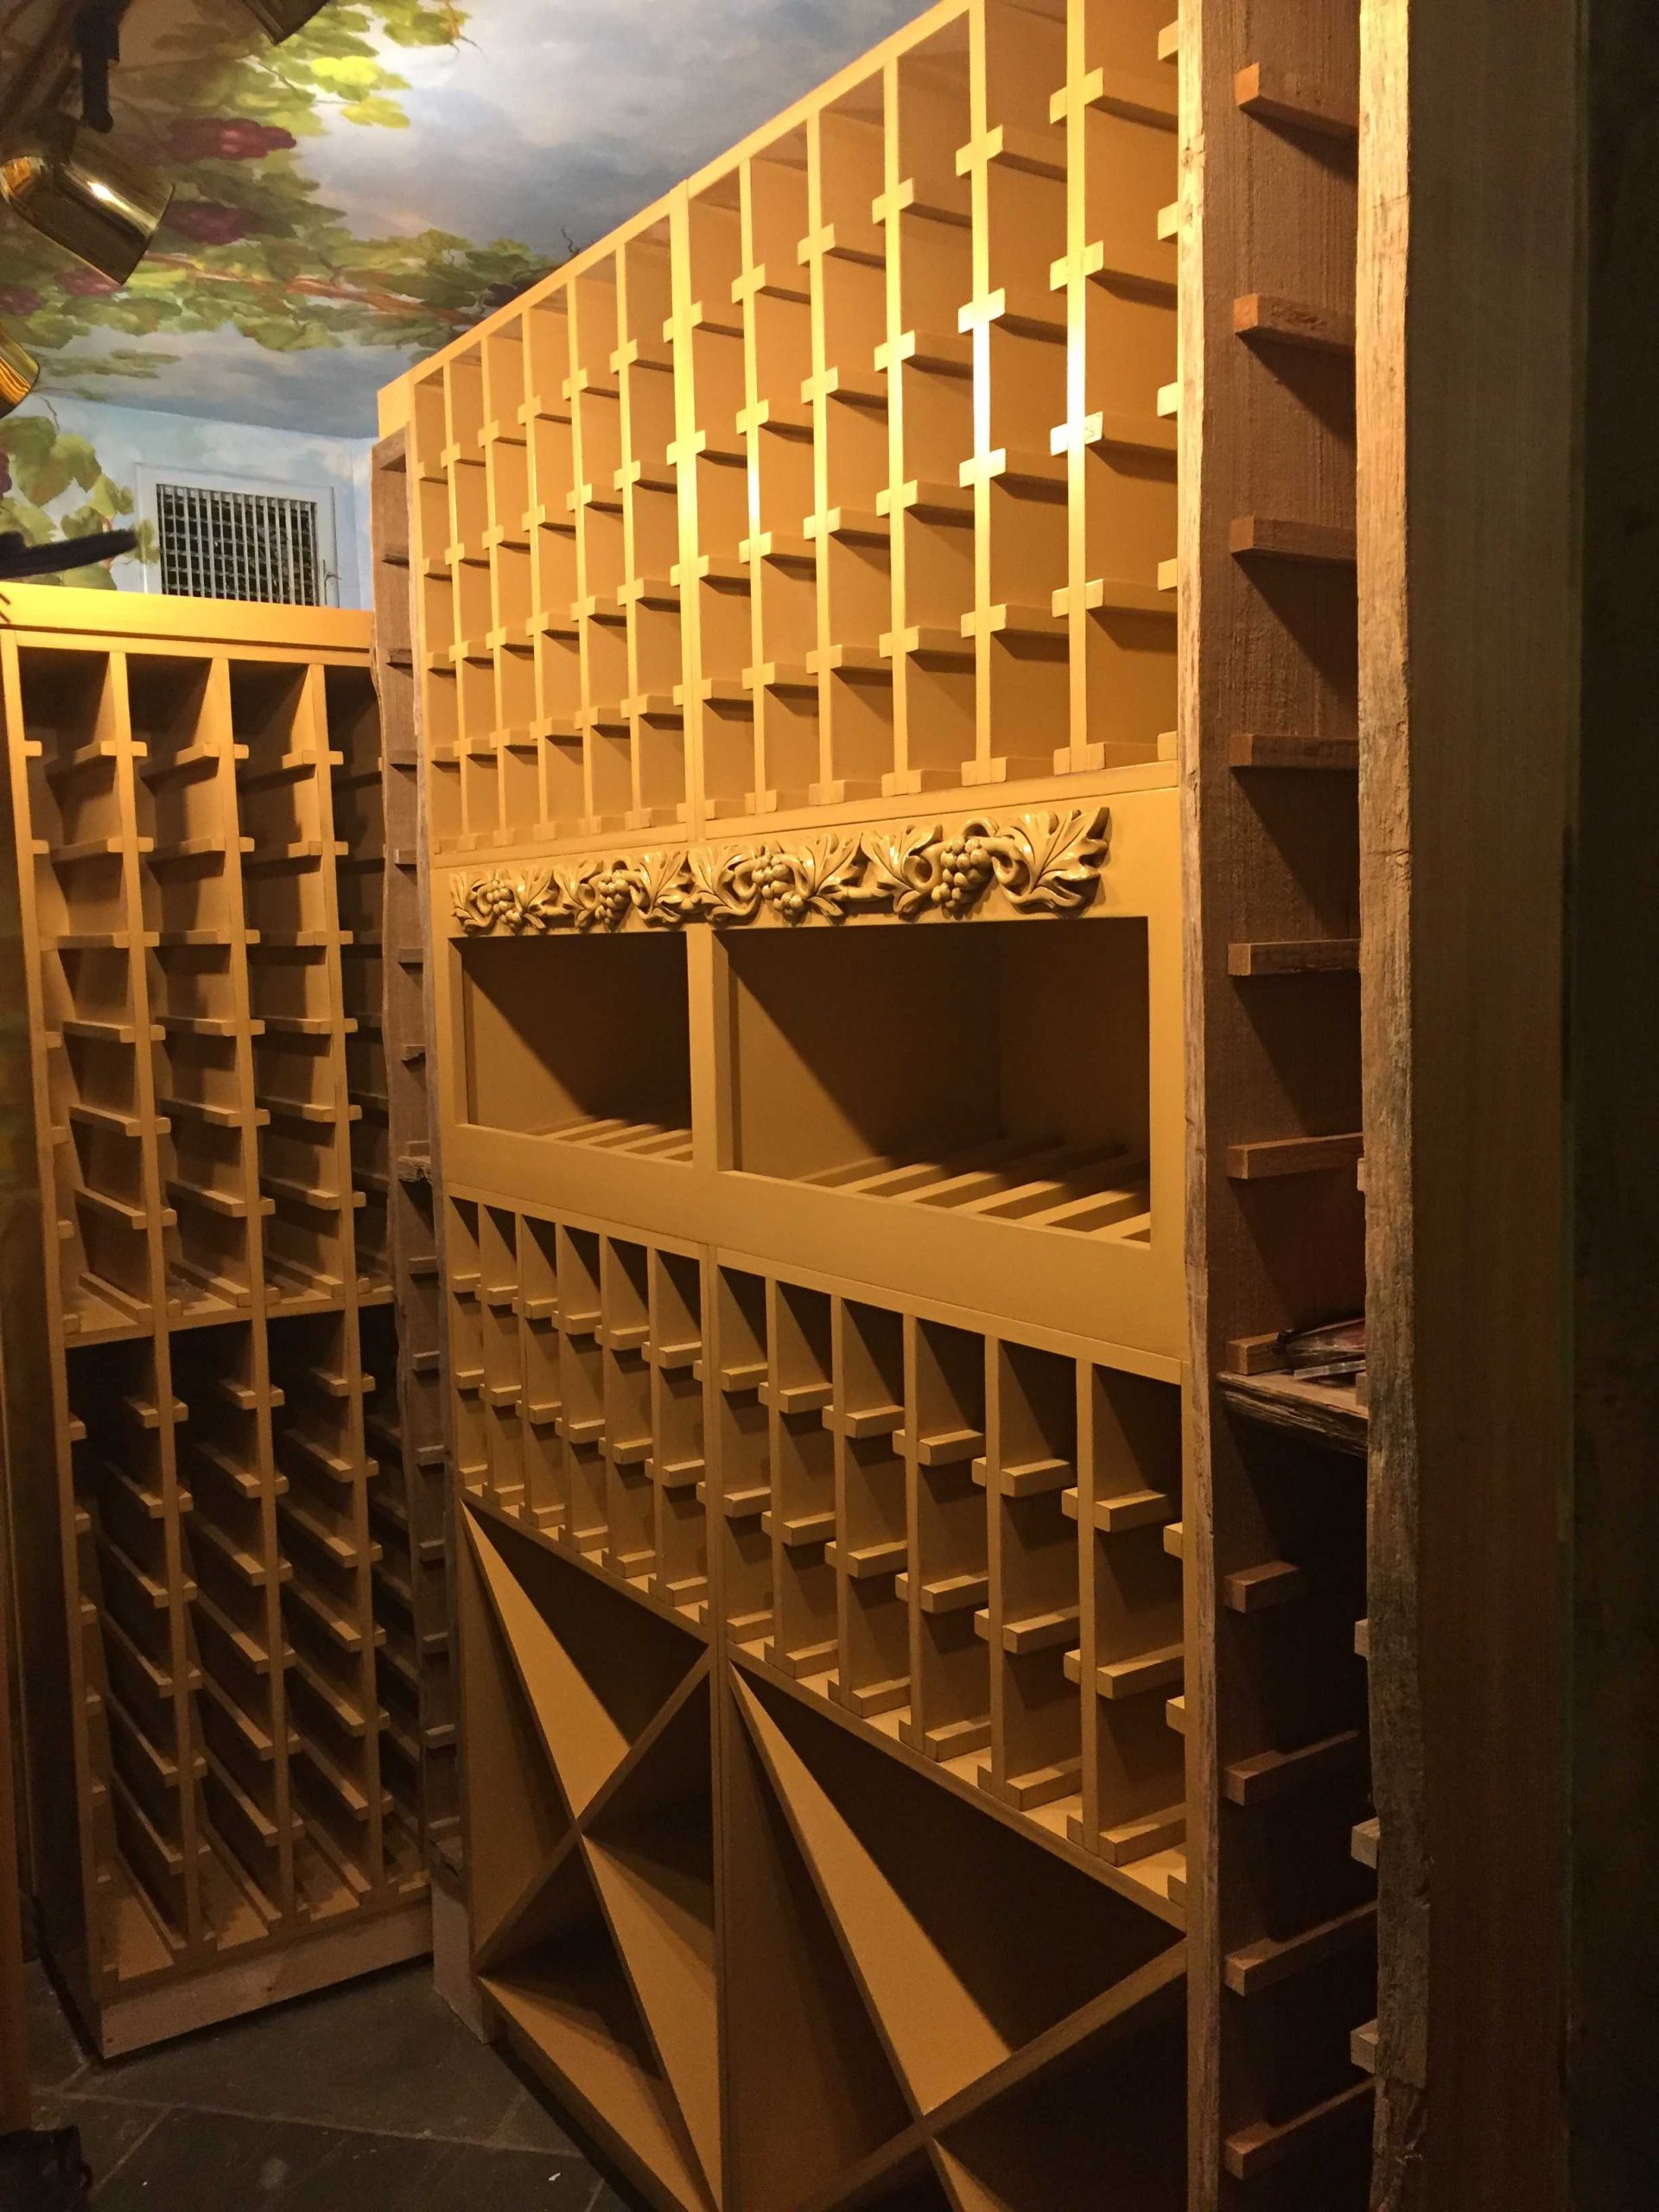 Custom Wine Racks Wine Storage Alpha Closets Company Inc, 6084 Gulf Breeze Pkwy, Gulf Breeze, Fl 32563 (850) 934 9130